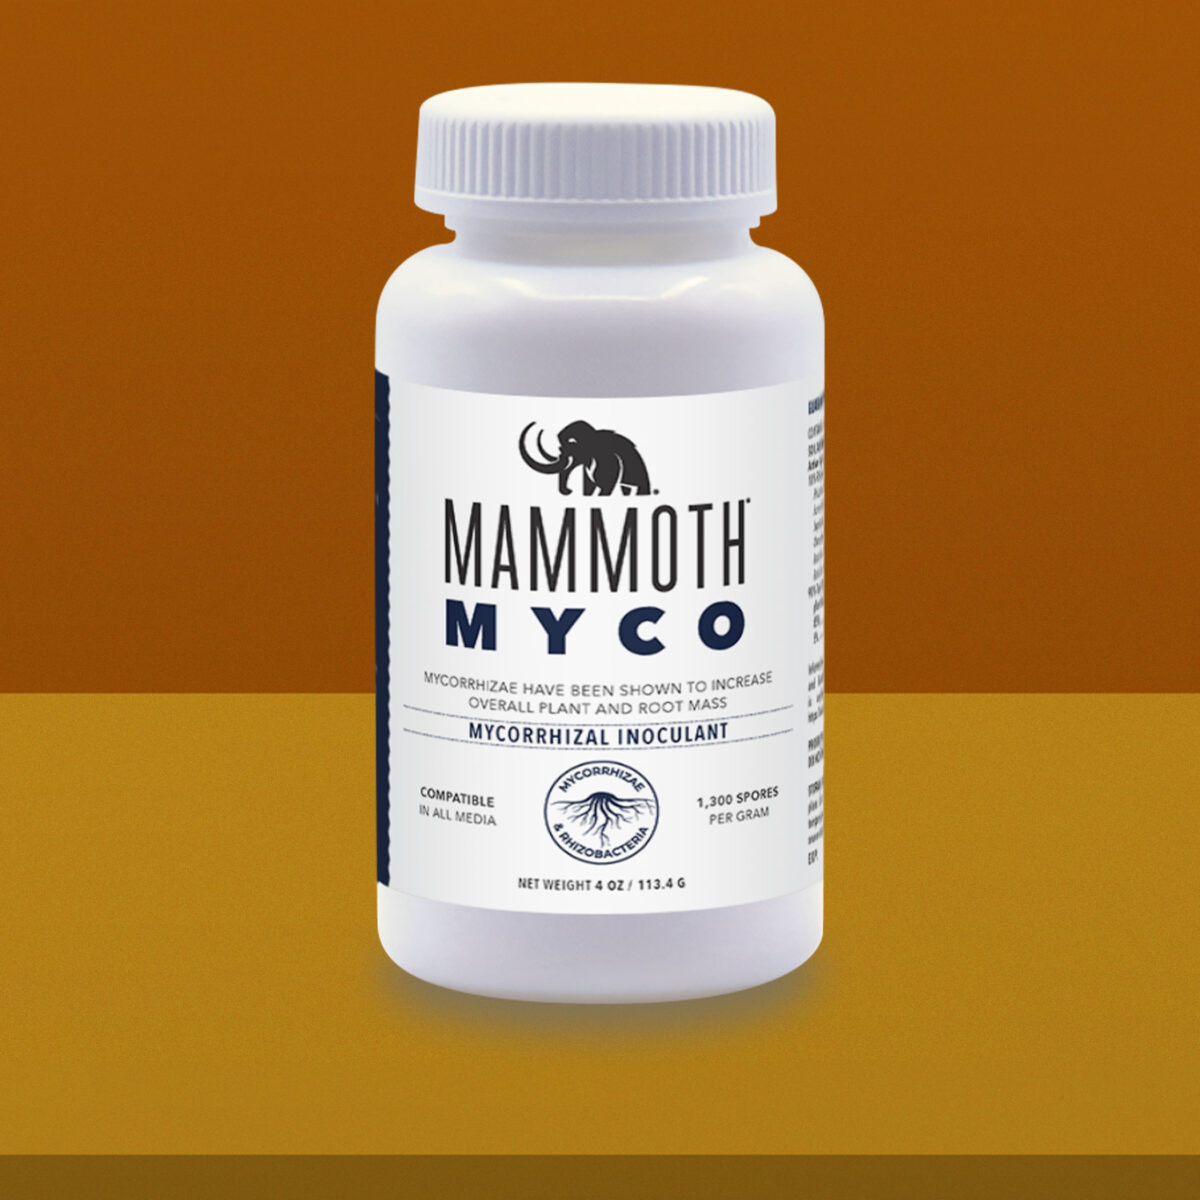 Mammoth Myco 4oz Product Image